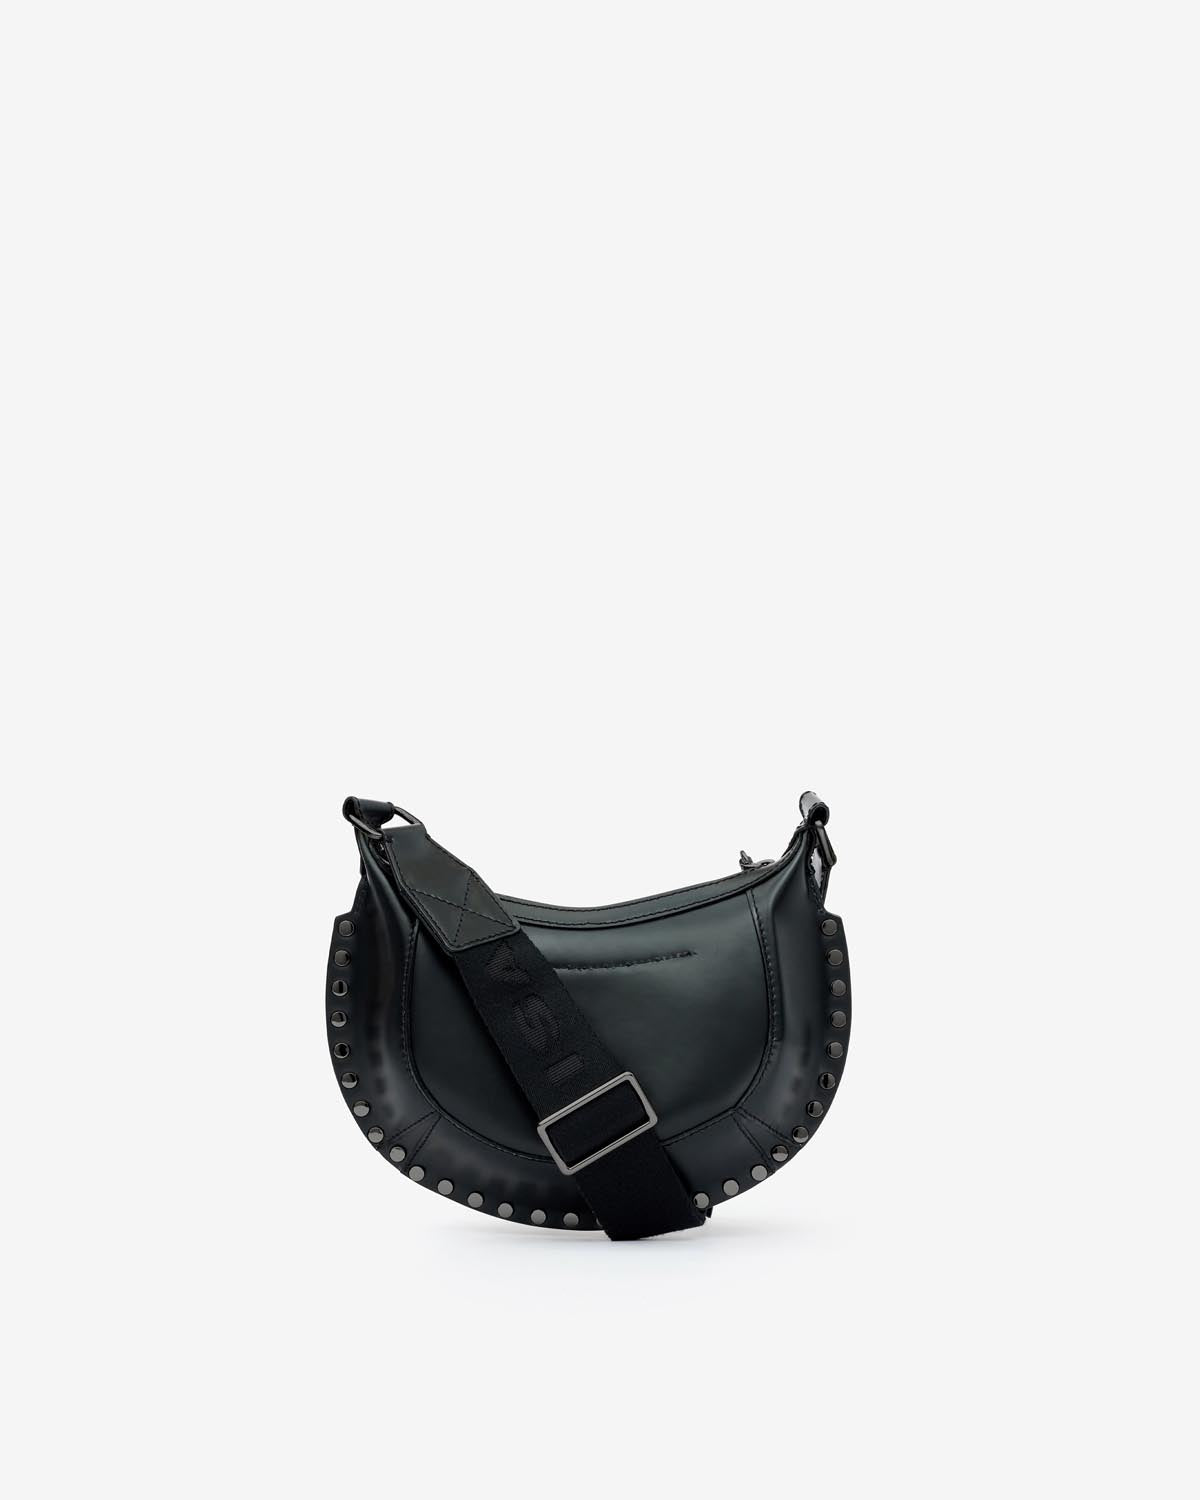 Mini moon bag Woman Black-black 5